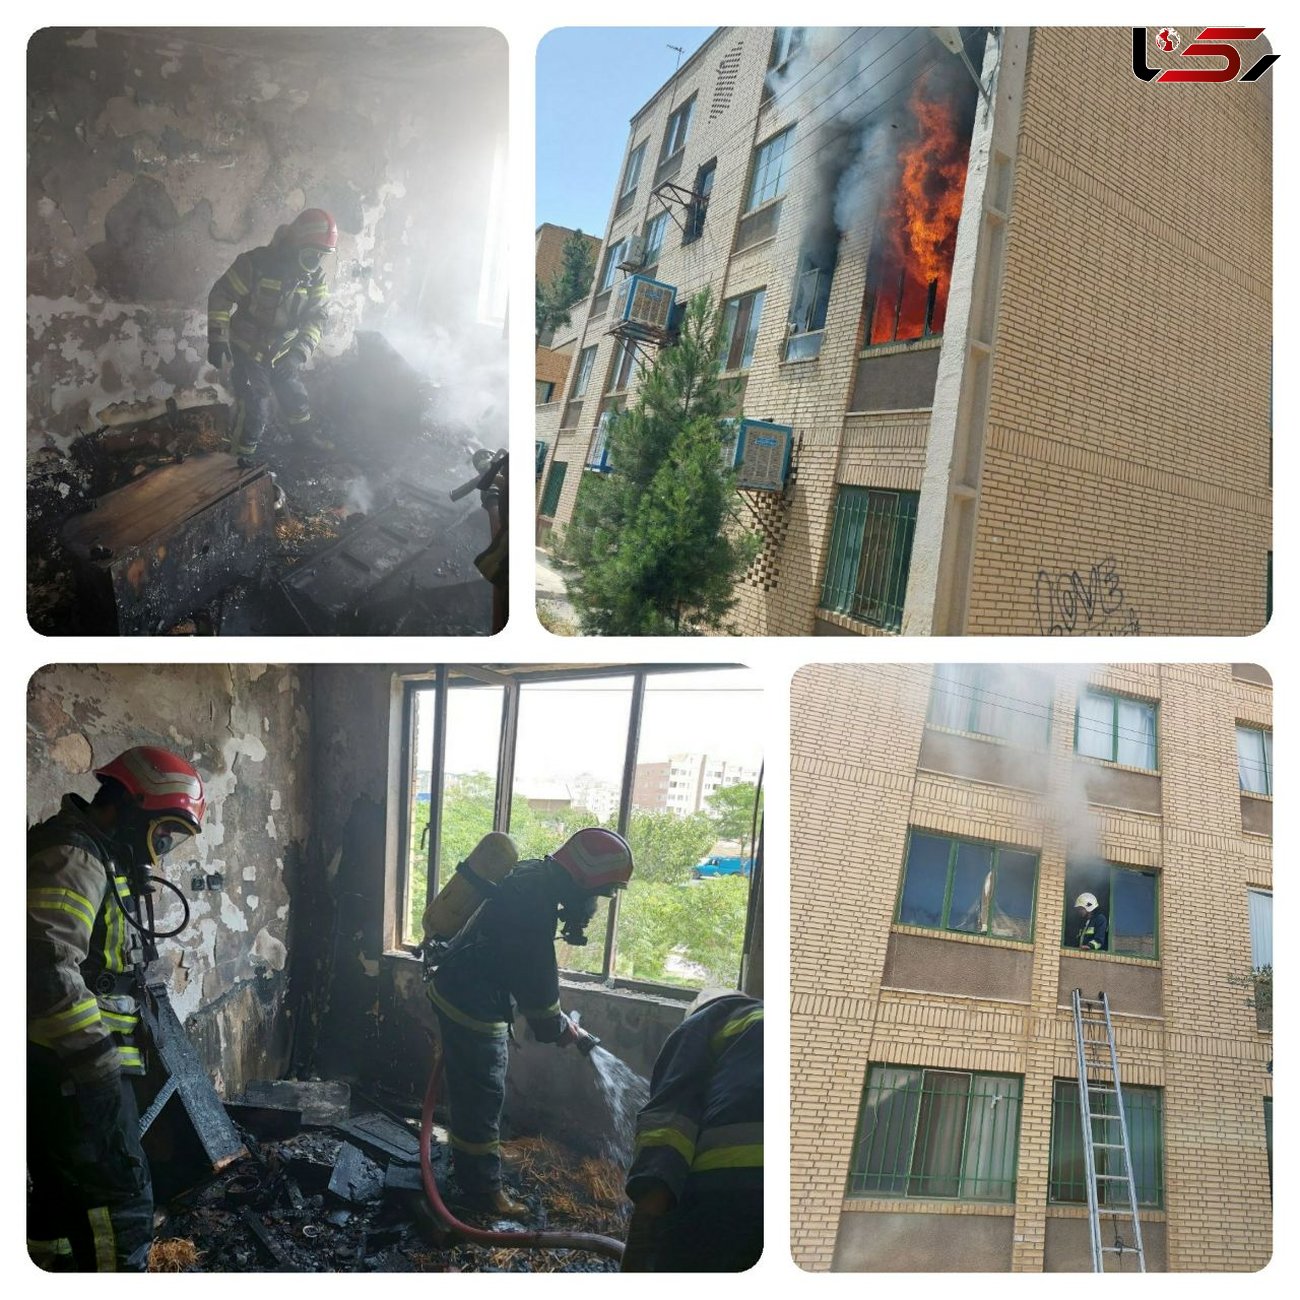 اطفای شعله های حریق در یک واحد مسکونی در سمنان 